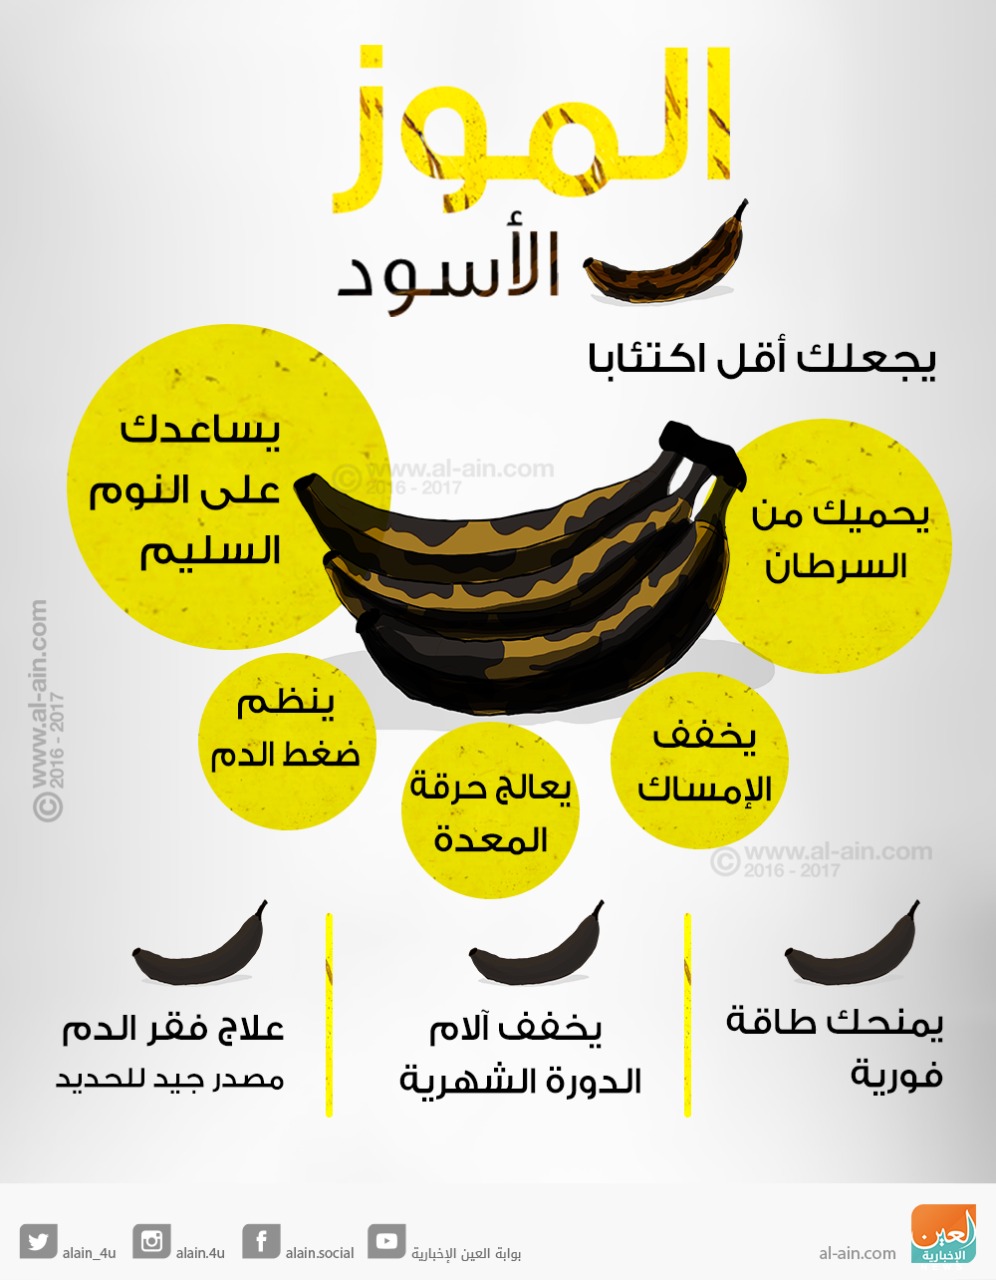 الموز الاسود علاج للاكتئاب والعديد من الامراض